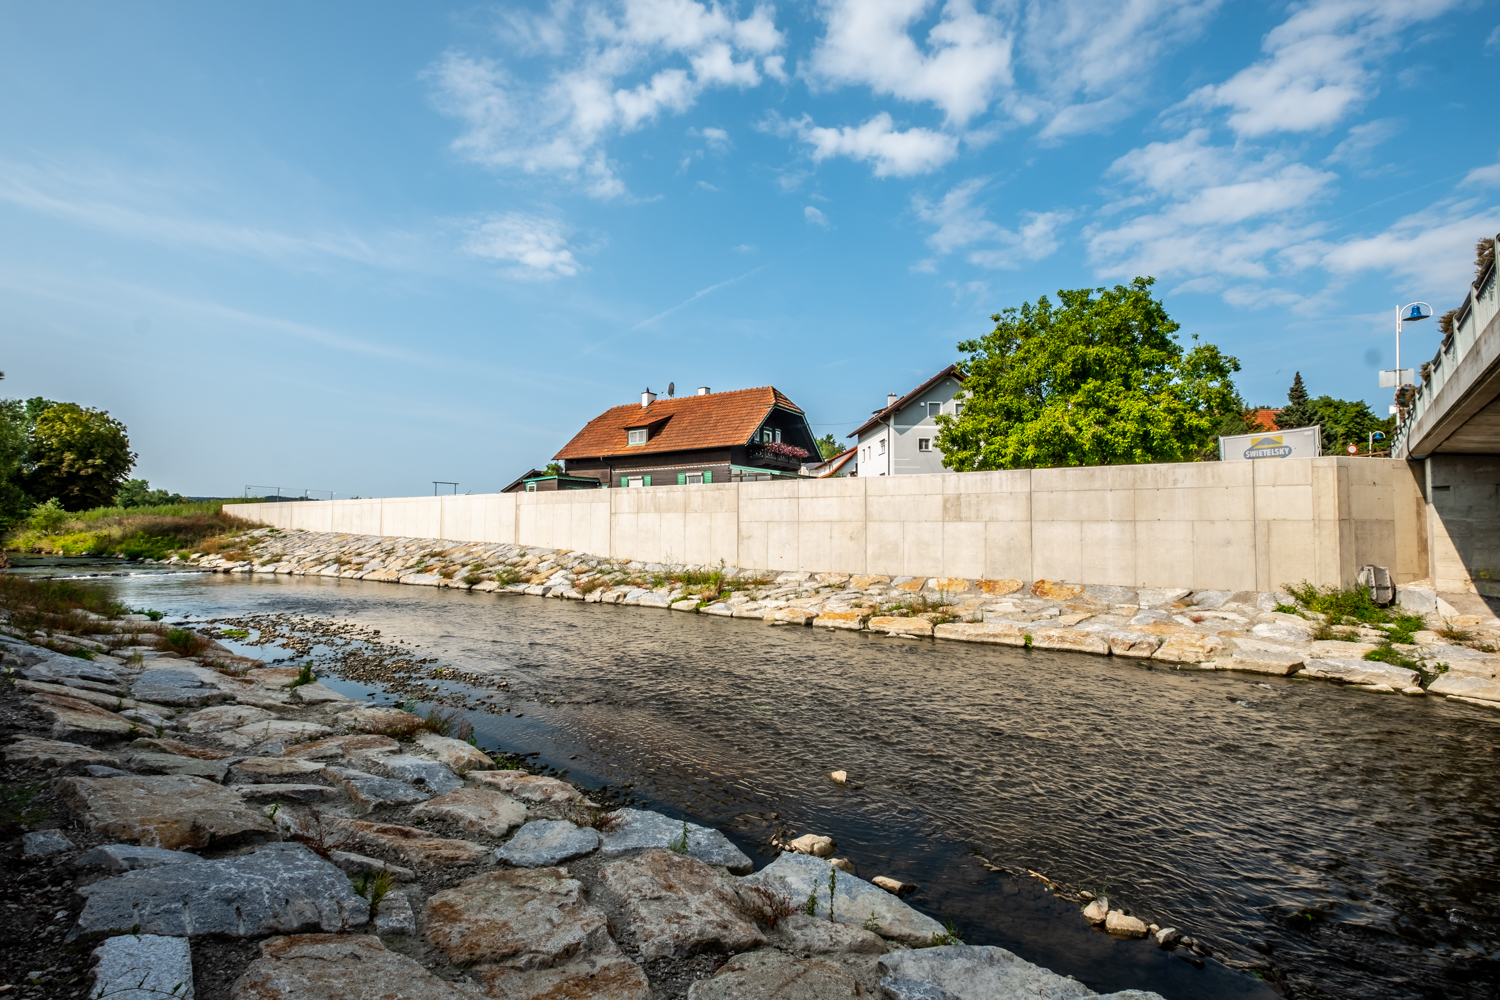 Hochwasserschutz Antiesen - Building construction